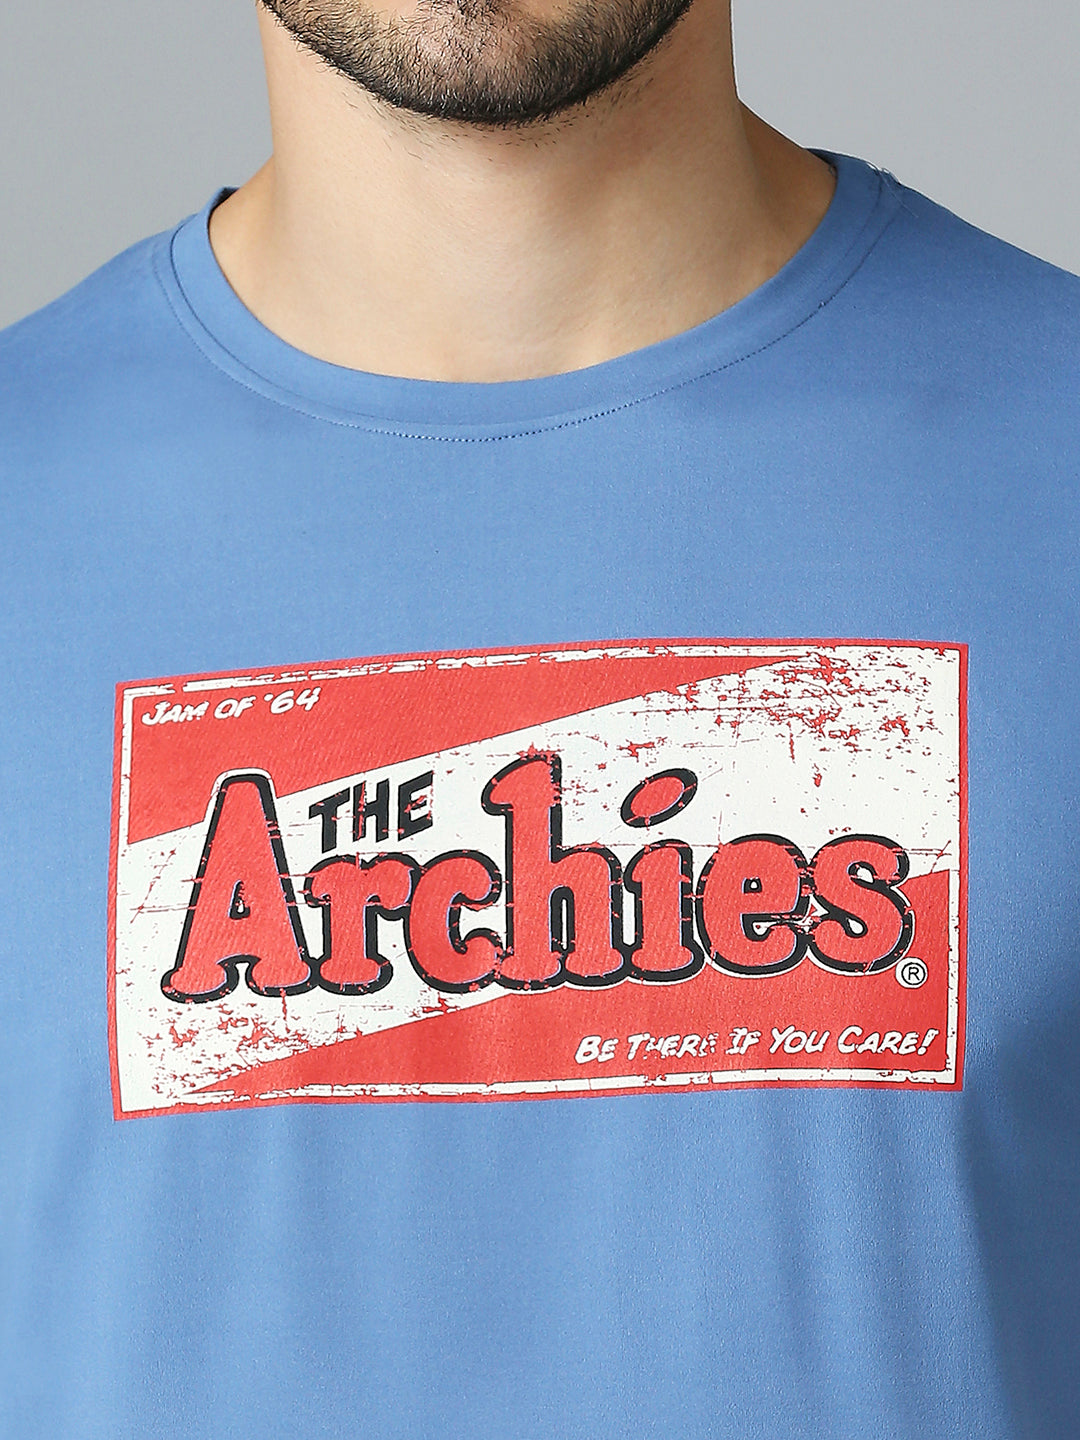 Archies T-shirt Men